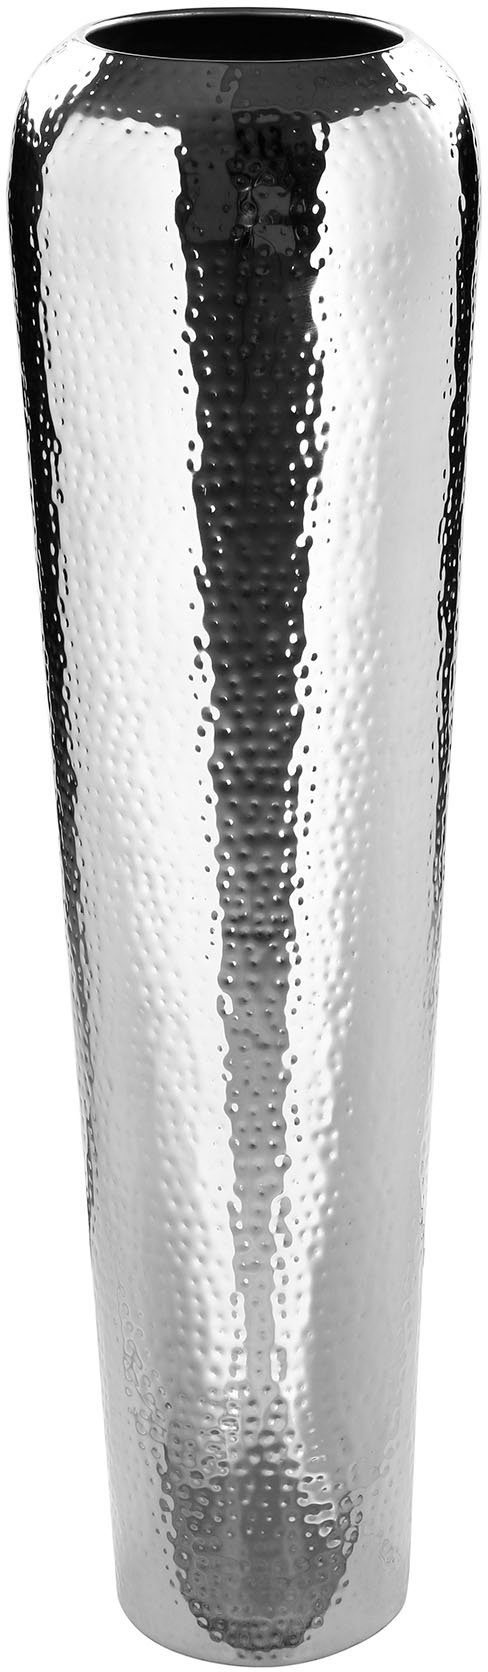 TUTZI, Ein mit aus ohne und Vase Blumen vernickelt, Metall, Bodenvase, mit Blickfang Fink Struktur (1 St), Dekovase gehämmerter